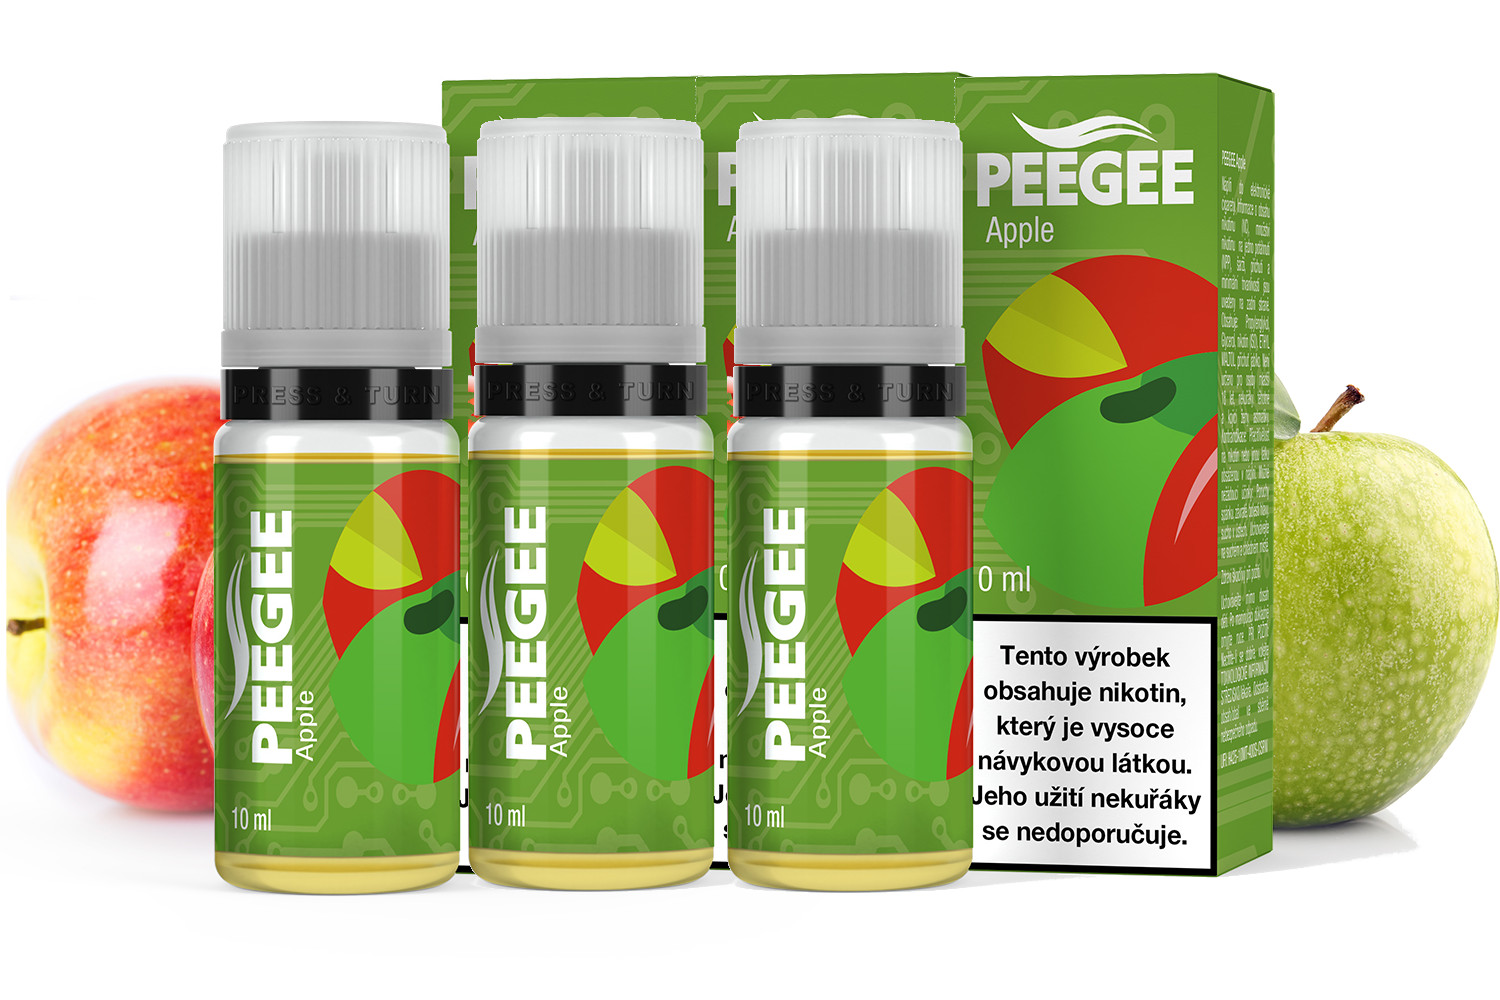 PEEGEE - Jablko (Apple) 3x10ml Obsah nikotinu: 12mg